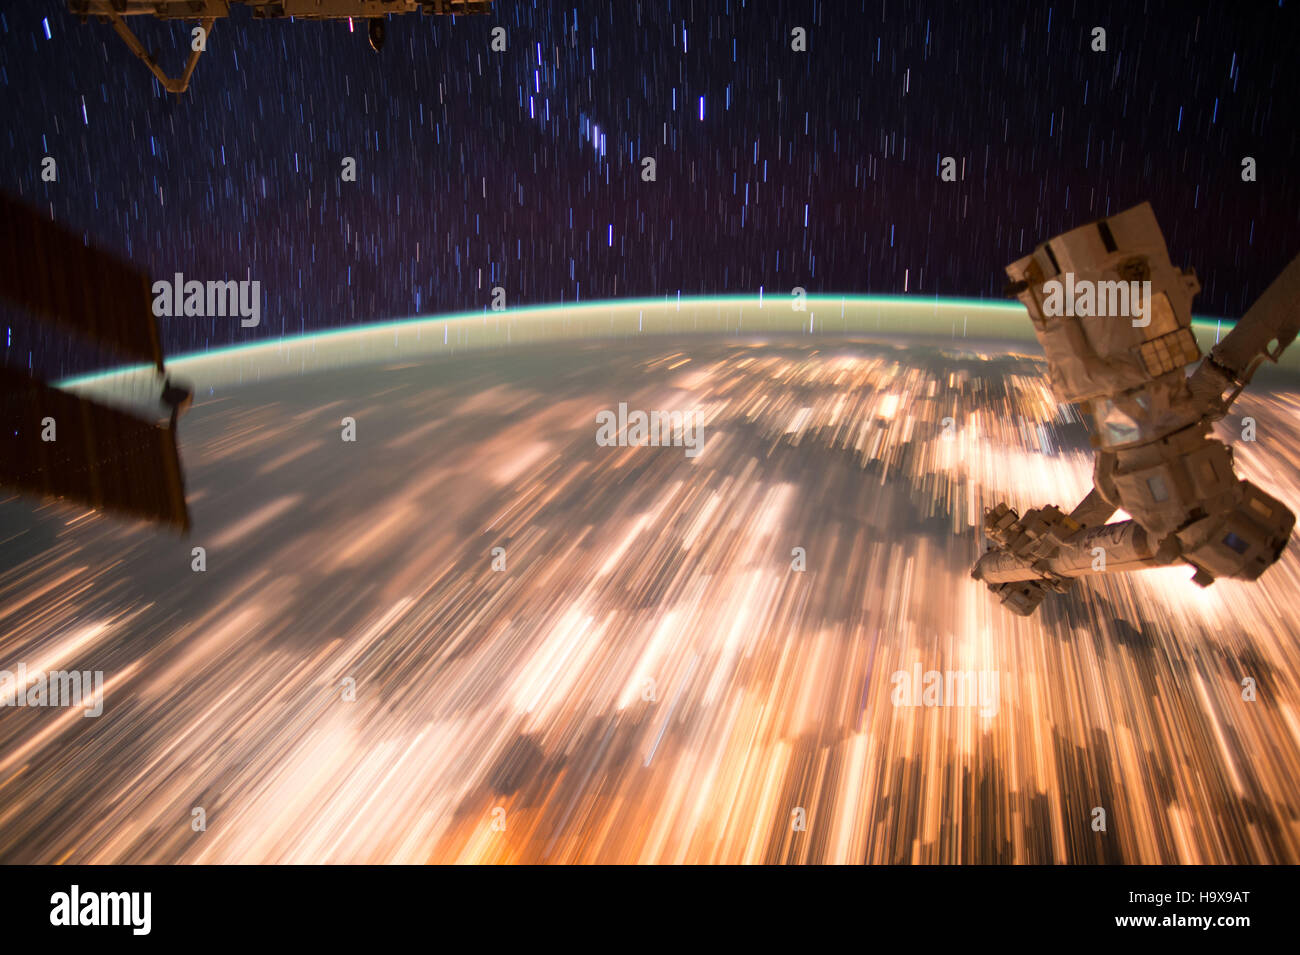 Les astronautes à bord de la Station spatiale internationale de la NASA a capturé un série de star trail des images sur la surface de la Terre le 3 octobre 2016 tandis que dans l'orbite de la Terre. Banque D'Images